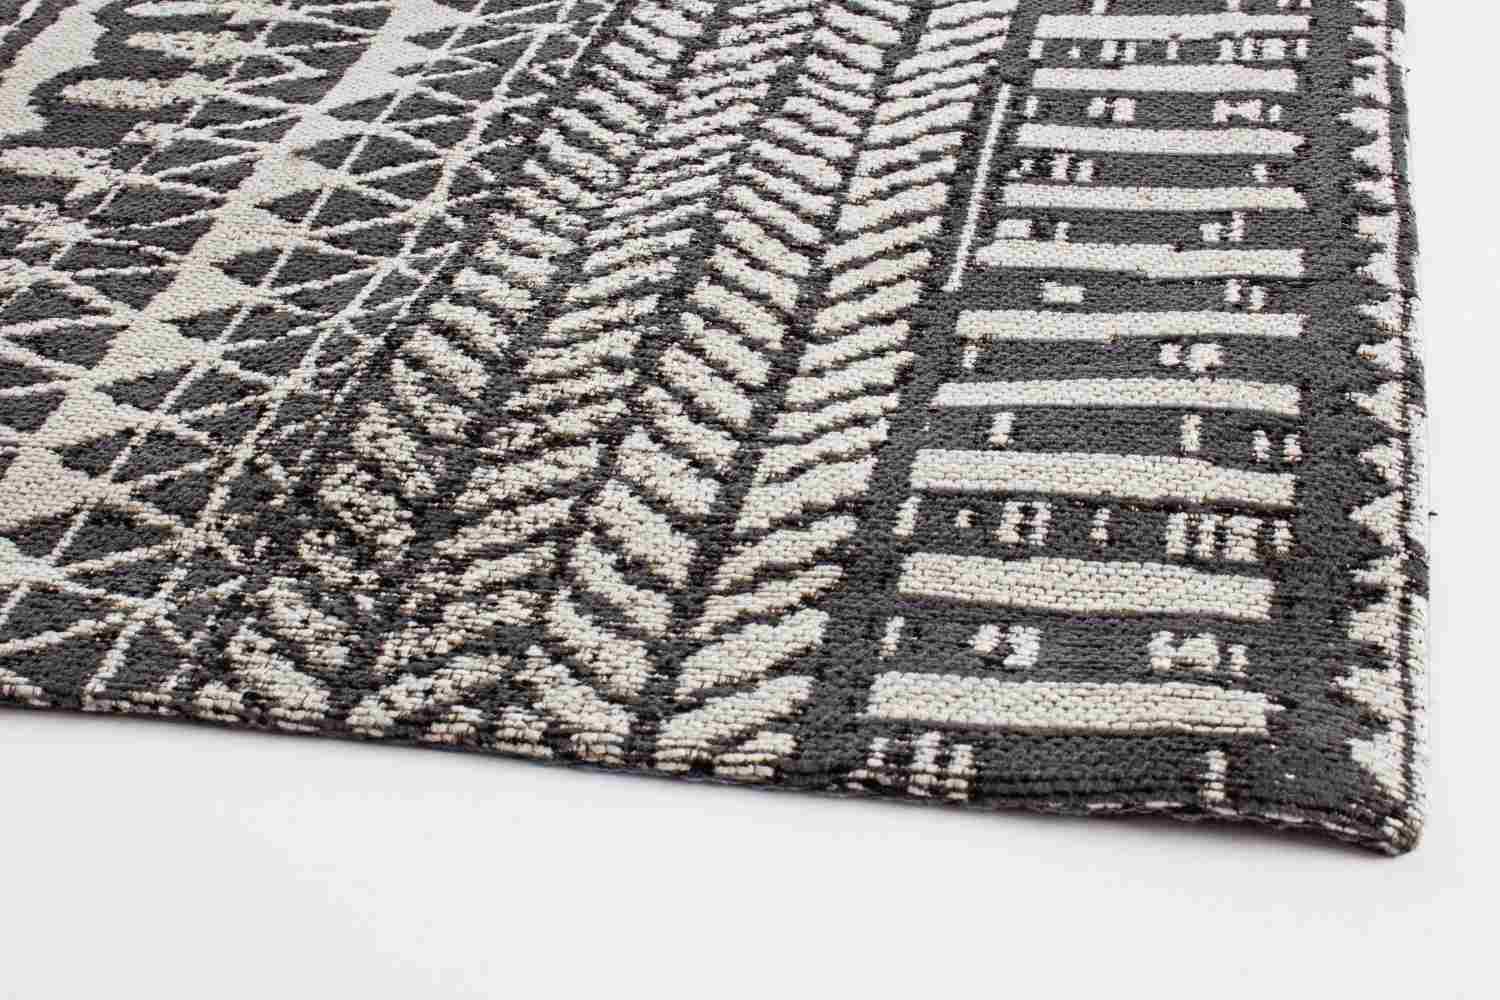 Der Teppich Algeri überzeugt mit seinem klassischen Design. Gefertigt wurde er aus Chenille und Polyester. Der Teppich besitzt einen dunkelgrauen Farbton und die Maße von 140x200 cm.